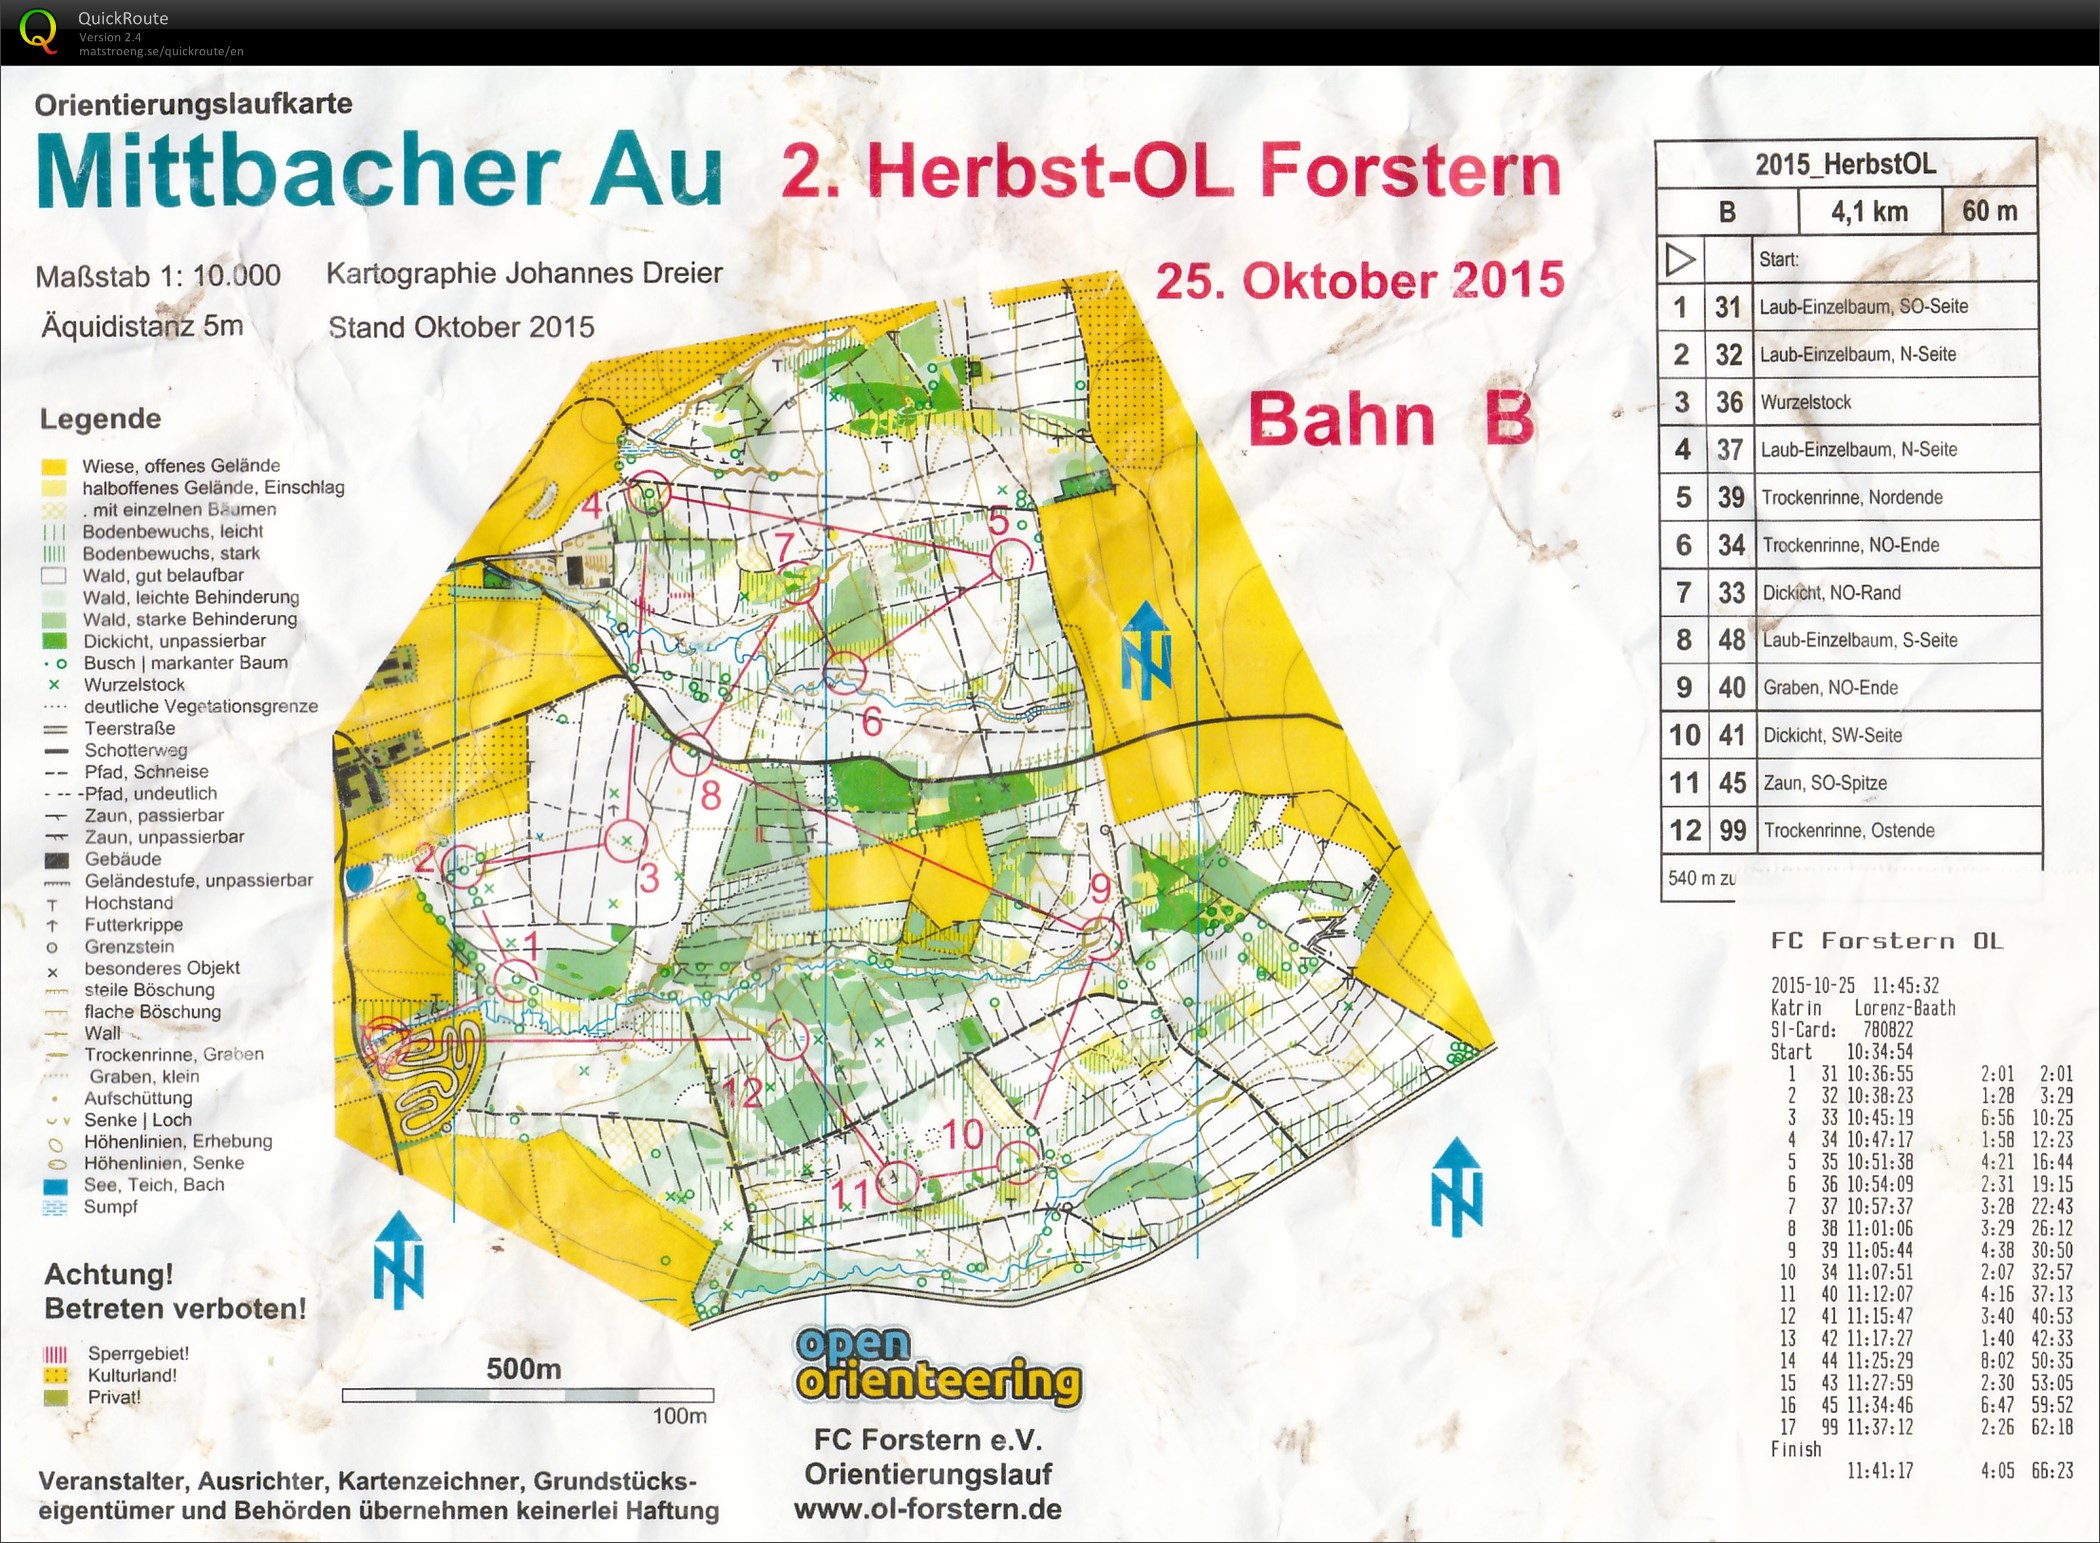 Herbst-OL Forstern (25-10-2015)